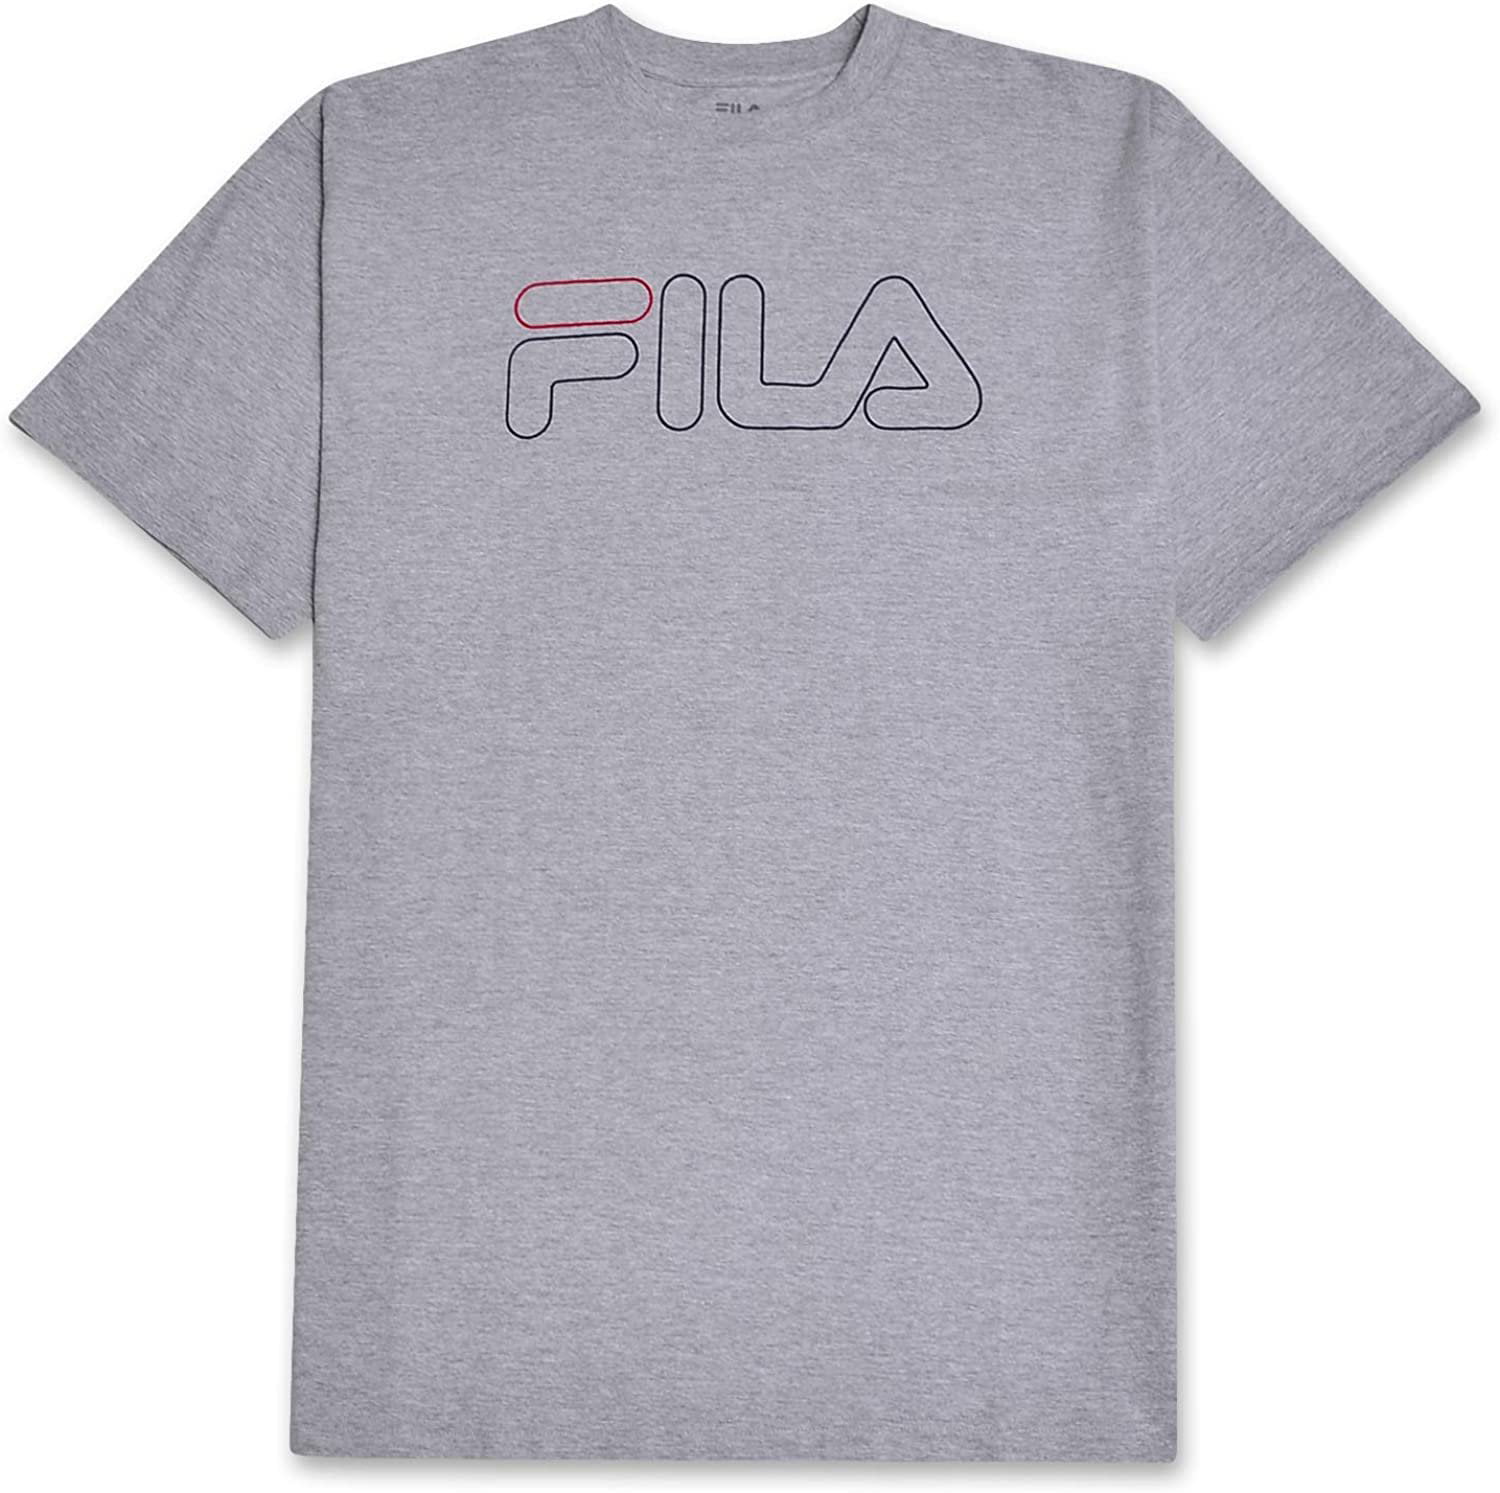 Brand: Fila - Fila Men Big and Tall Logo Crewneck T Shirt Men Short ...